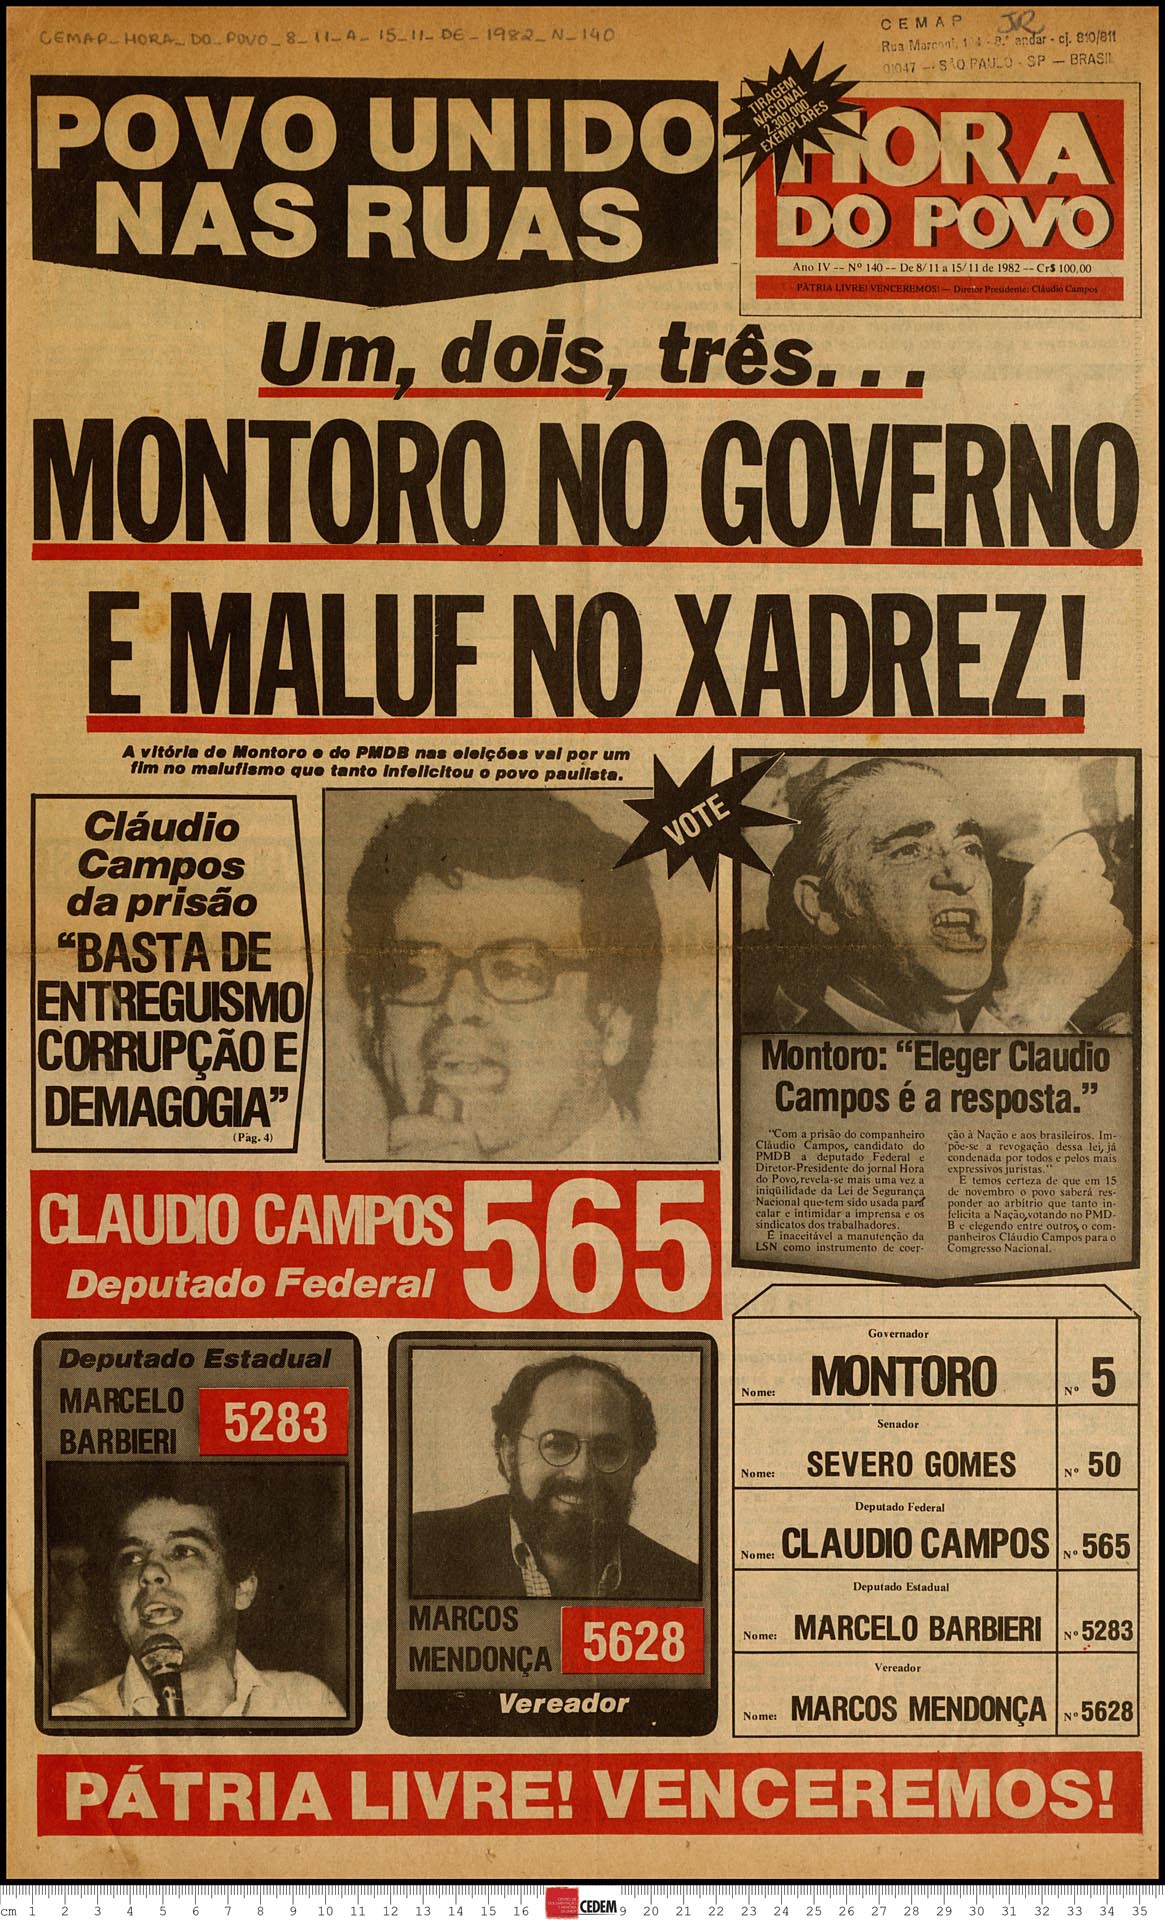 Hora do Povo - 140 - 8 a 15 de nov. 1982